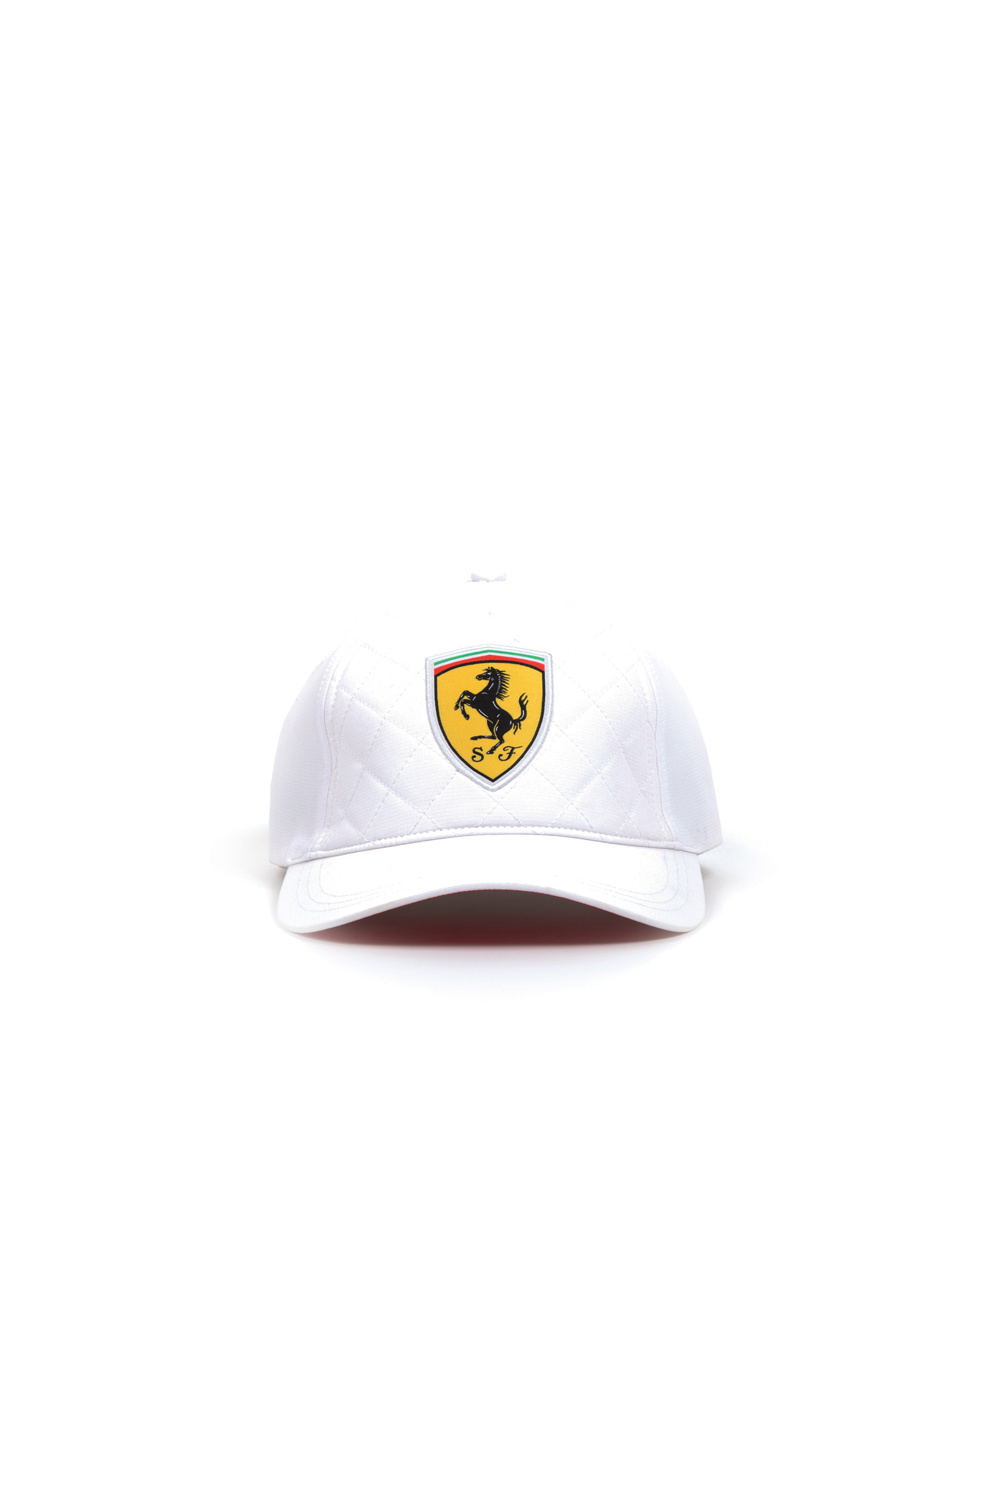 Ferrari Scuderia Ferrari Cap Quilt White